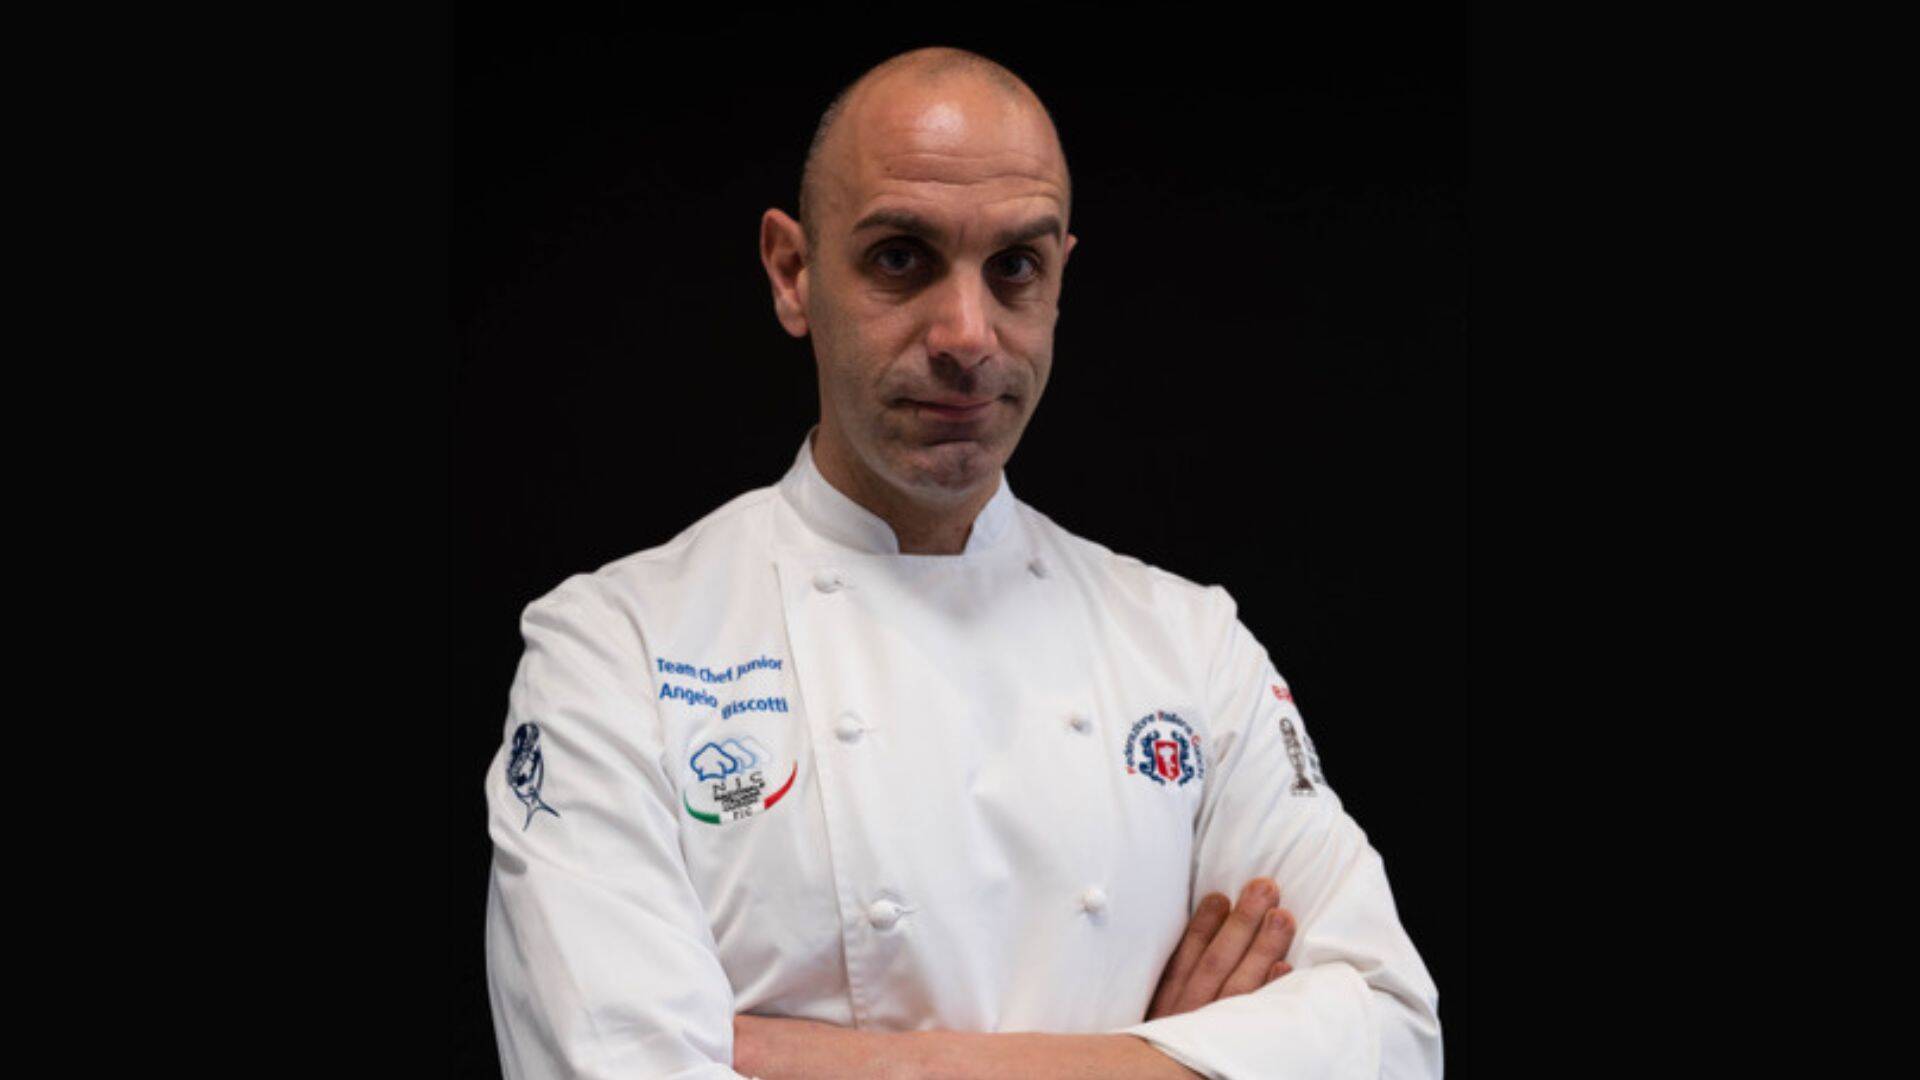 Biscotti, ex chef del ristorante La Perla, alle Olimpiadi della cucina a Stoccarda